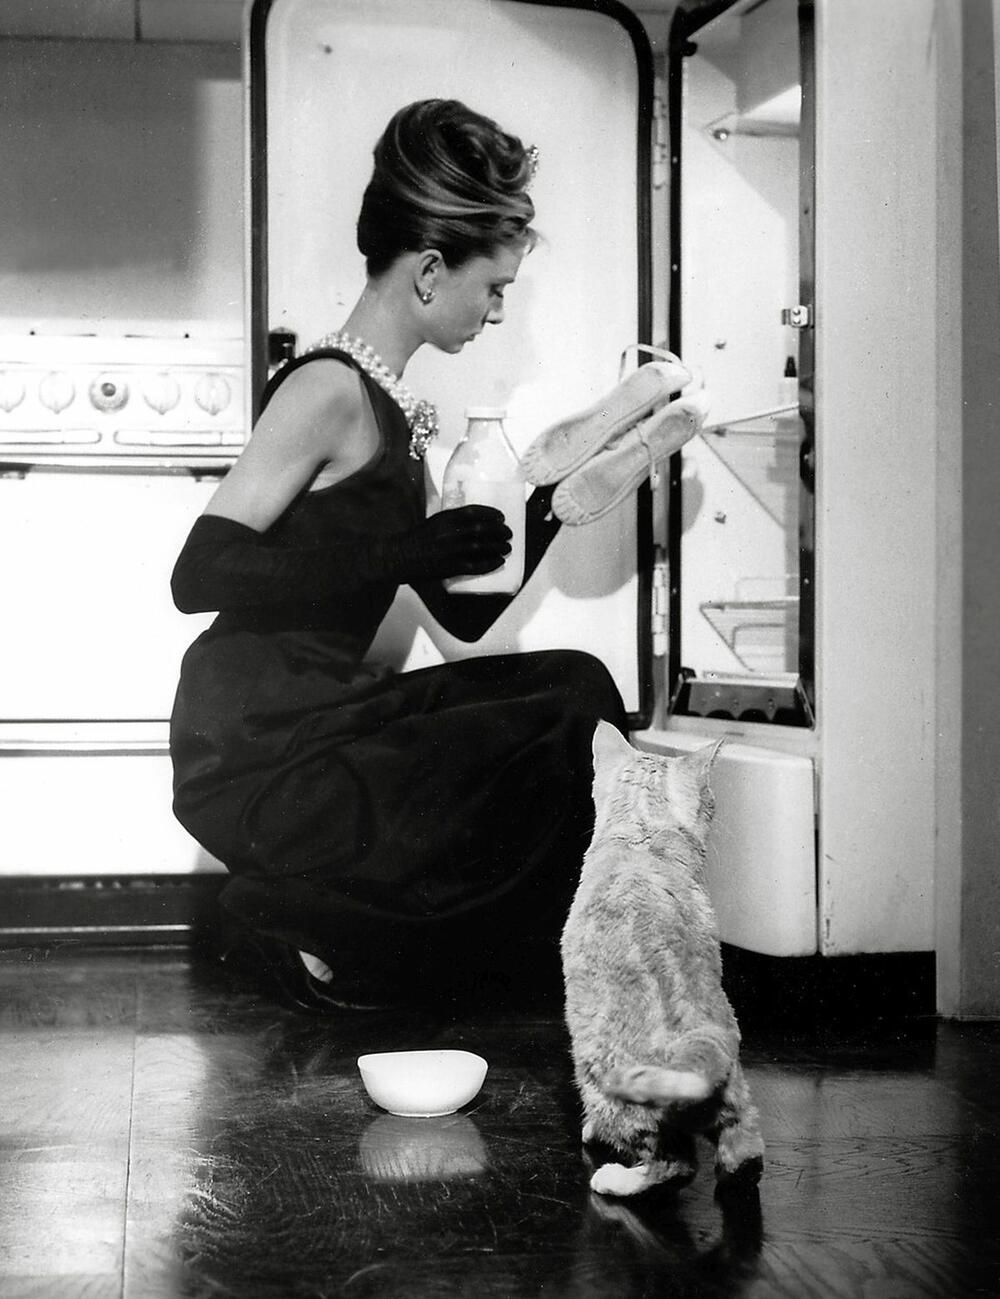 <b> Crna haljina Odri Hepbern (1961) </b> 
<i>  Dizajner: Iber de Živanši za svoj brend Givenchy </i> 
Čak i ako niste gledali "Doručak kod Tifanija", dobro znate i verovatno vam je prva asocijacija na Odri Hepbern najčuvenija mala crna haljina u istoriji mode. Iako ju je dizajnirao sam Živanši, blizak prijatelj slavne glumice,  izmenila ju je Edit Hed kako toaleta ne bi previše pokazivala noge.